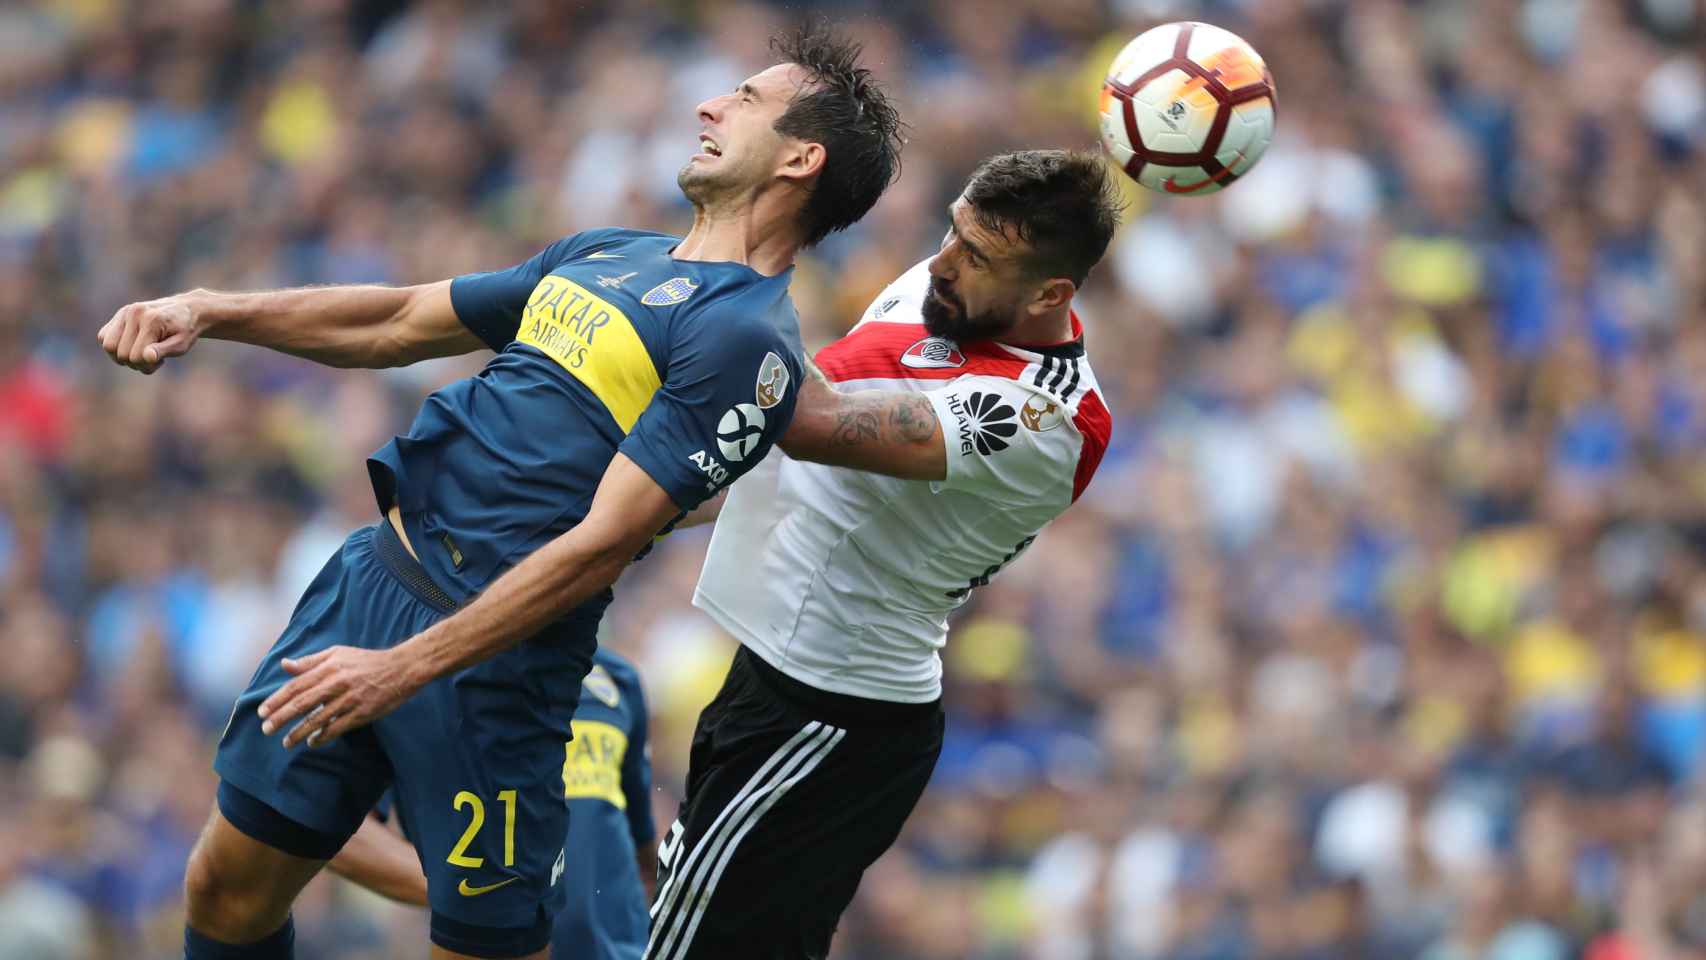 El jugador de River Plate Lucas Pratto disputa el balón Carlos Izquierdoz de Boca Juniors